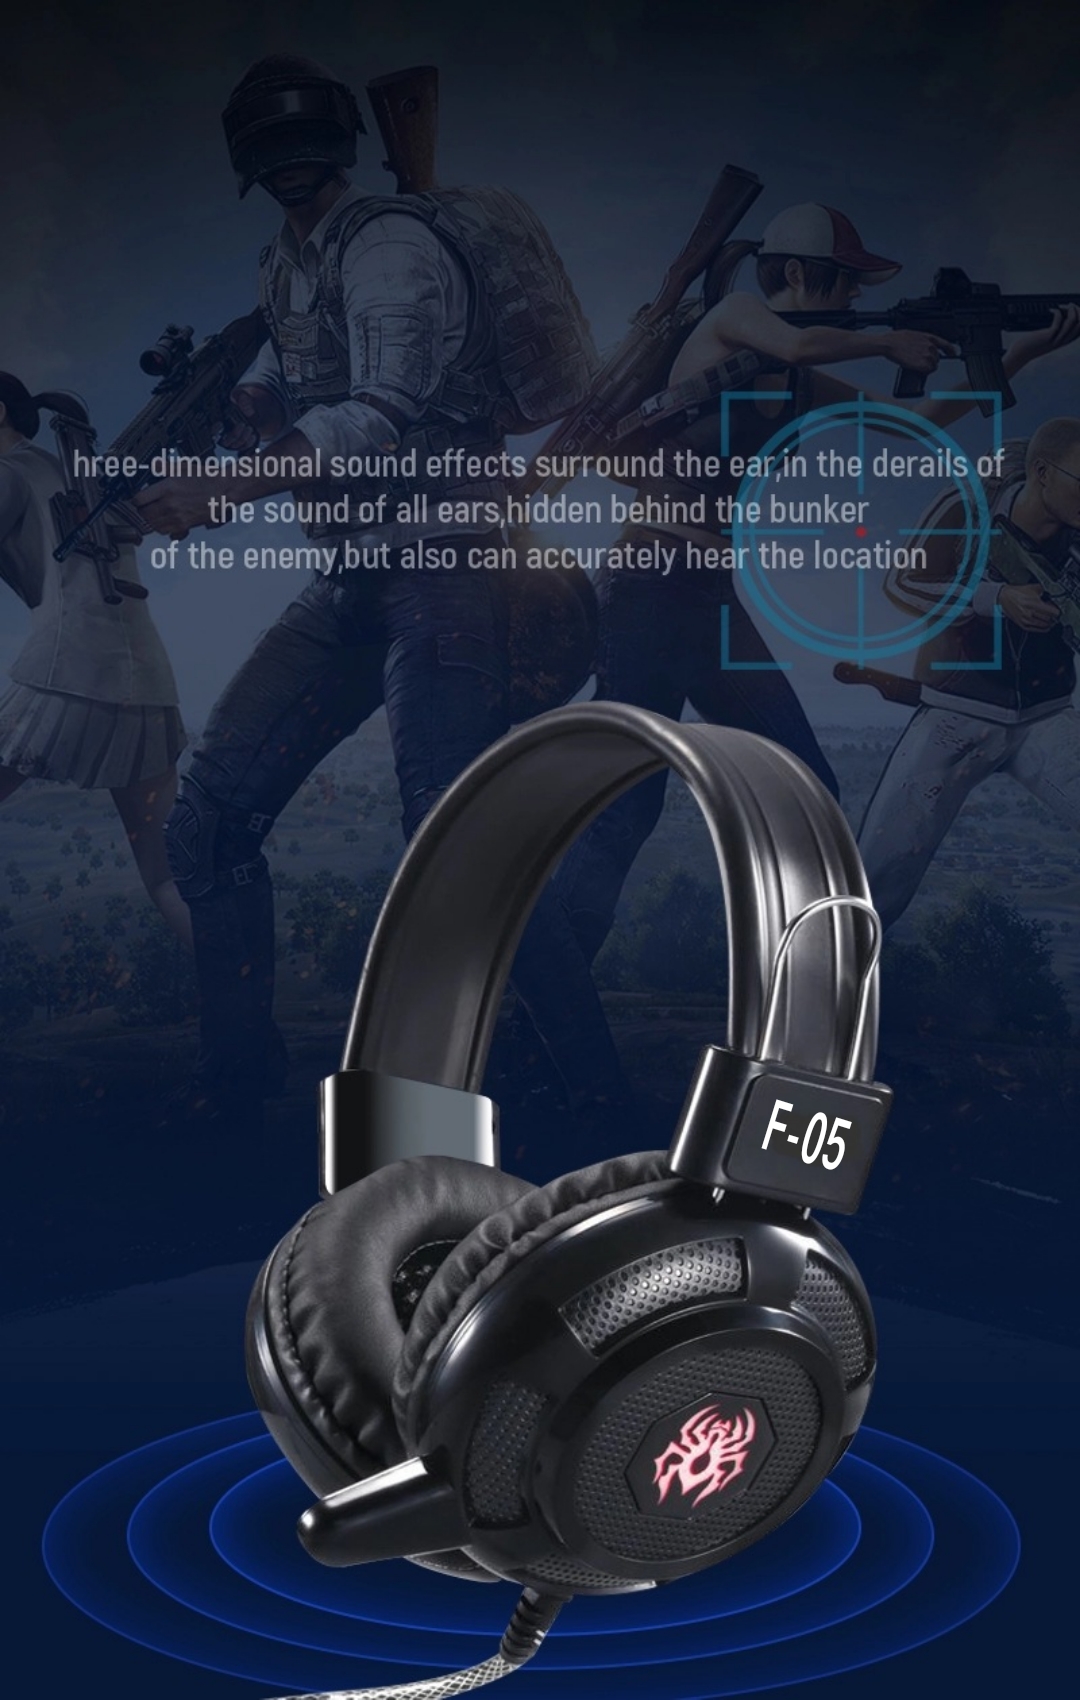 ?ลดแรงมาก?เพื่อคอเกมมิ่ง+ ✅หูฟังเล่นเกมส์✅ หูฟังเกมมิ่ง ✅ F05 stereo headset gaming ⚡ สุดยอดหูฟังเกมมิ่ง 2020เสียงสมจริงสายยาว 2.3 Mเกมเมอร์ต้องมี